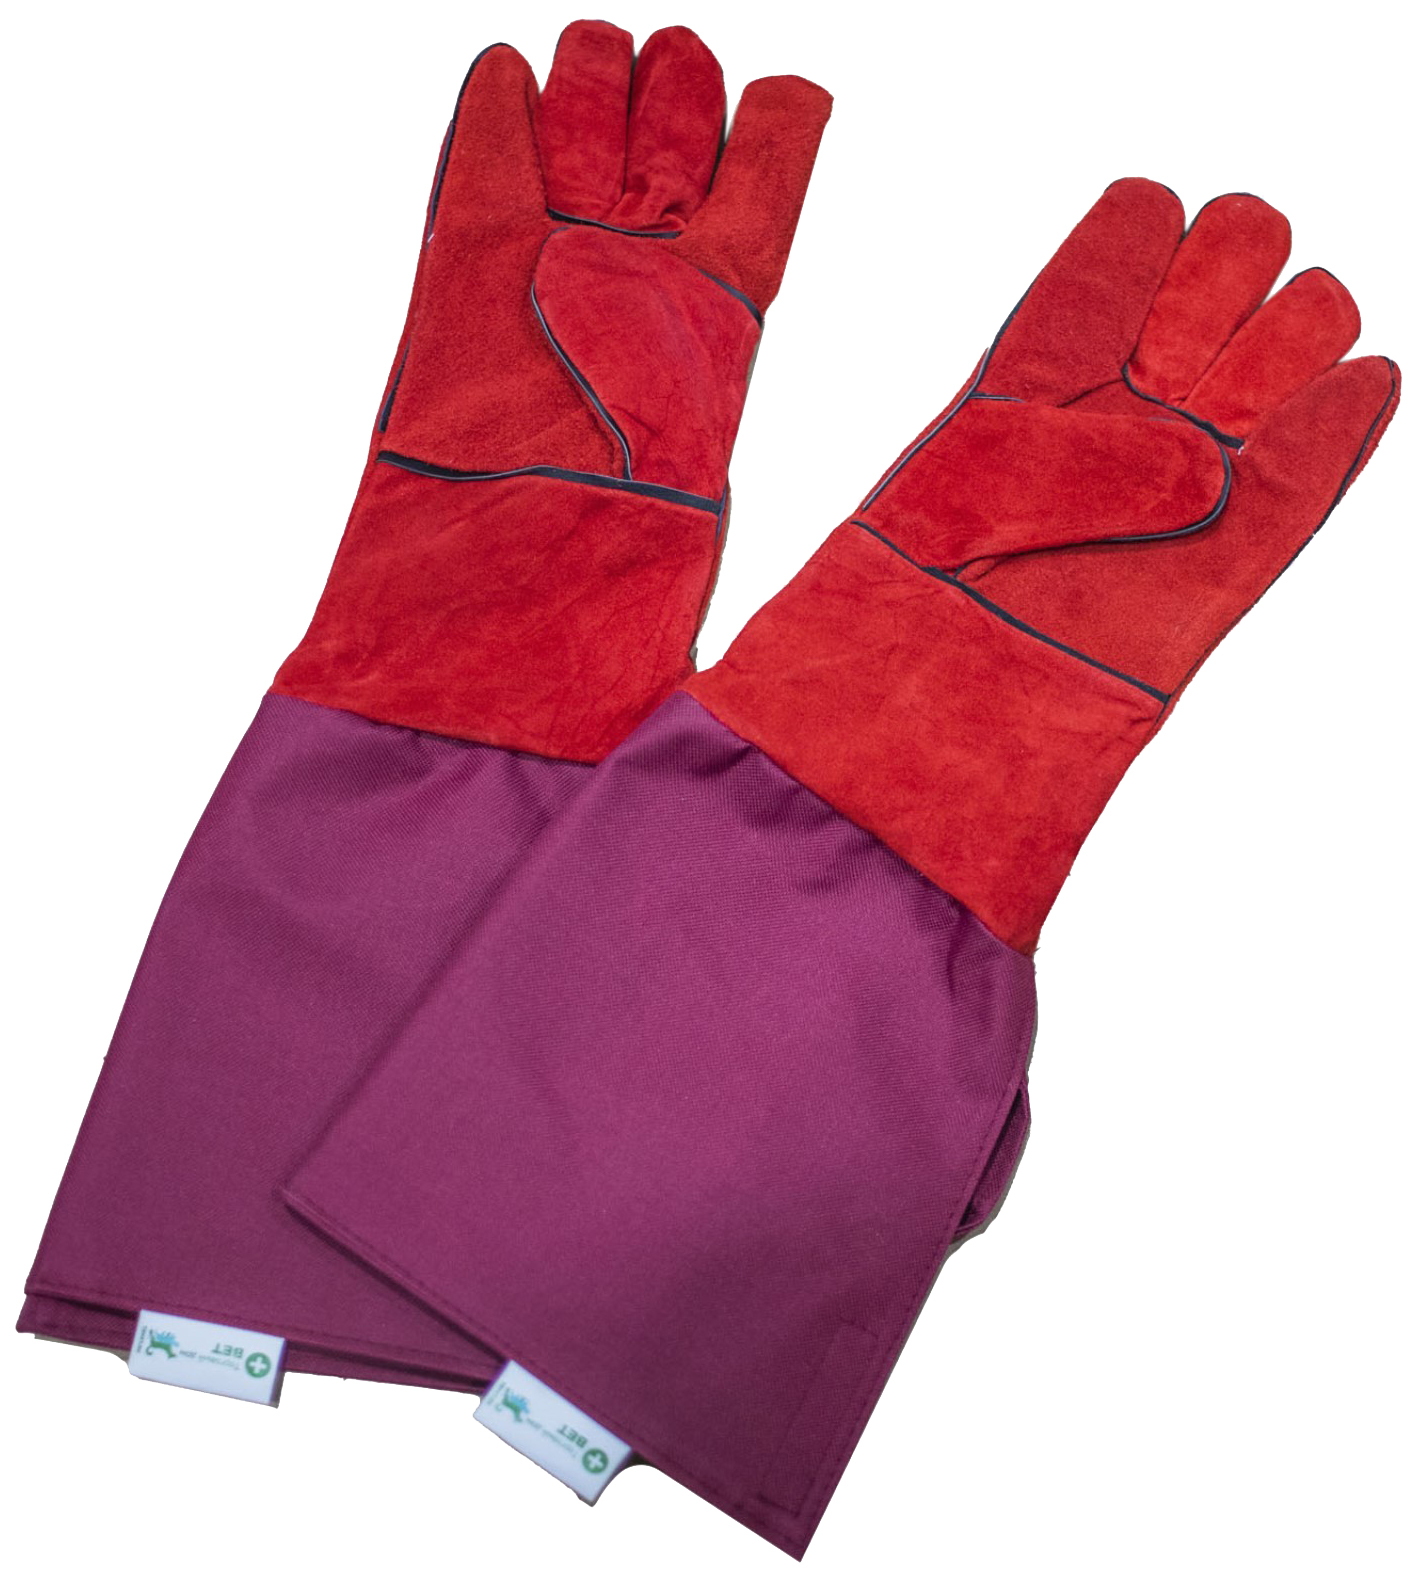 Ветеринарные защитные перчатки ТД ВЕТ, 52 см